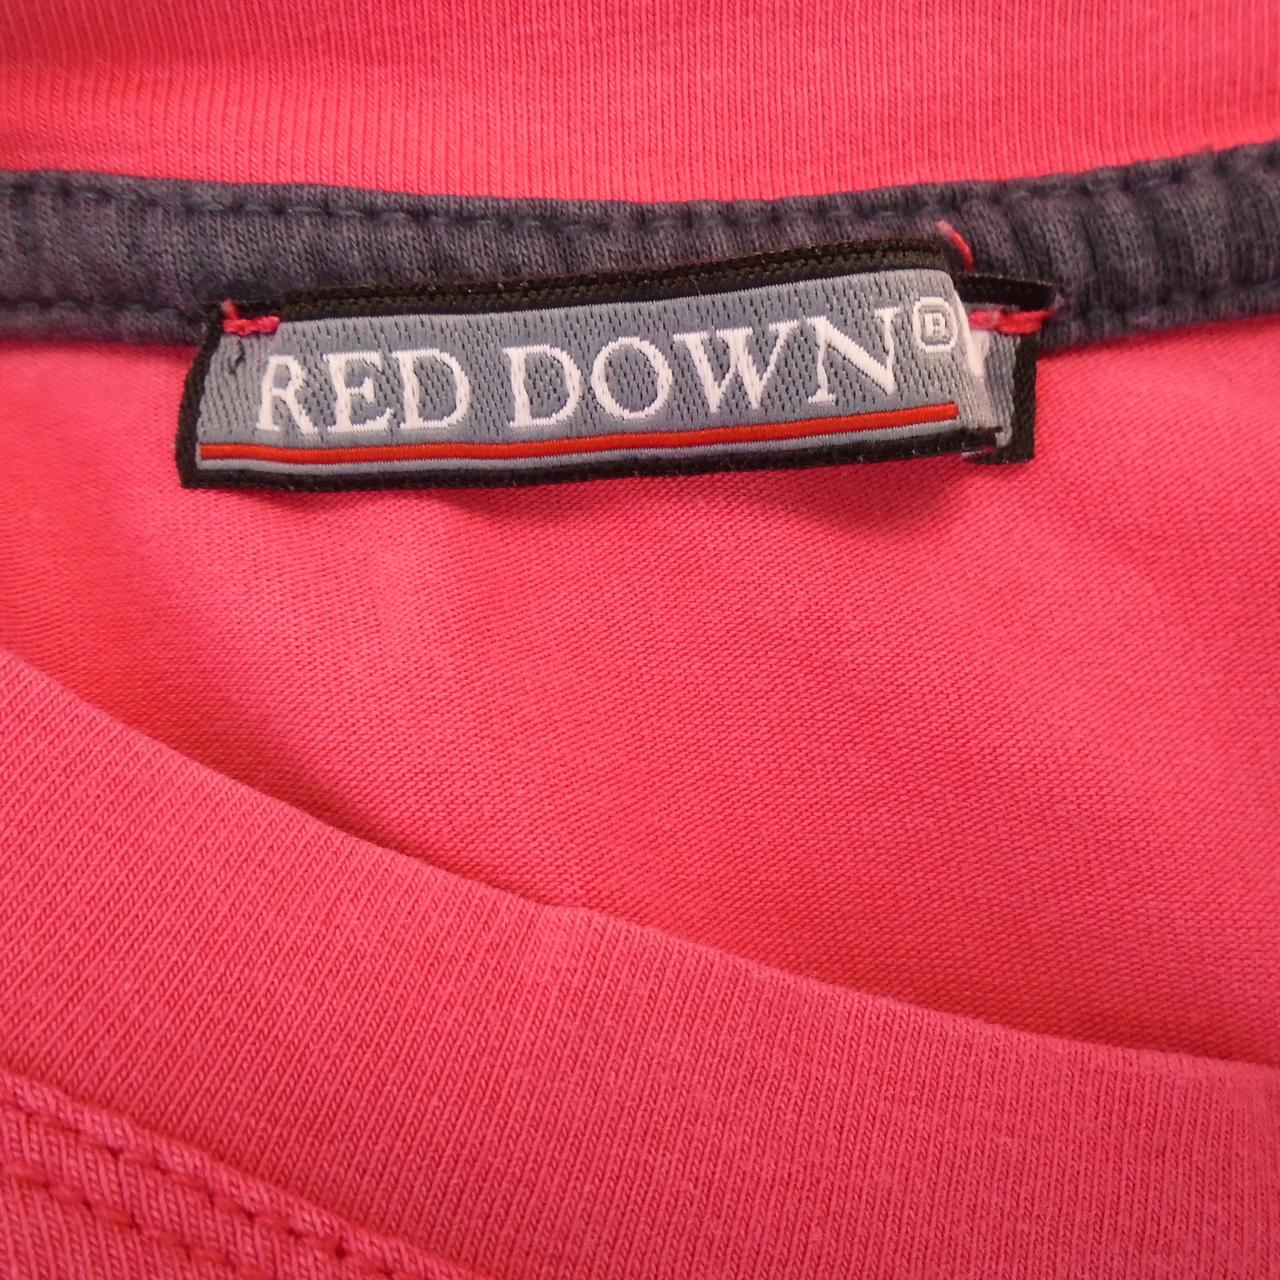 Camiseta de mujer roja hacia abajo.  Rosado.  SG.  Usó.  Bien